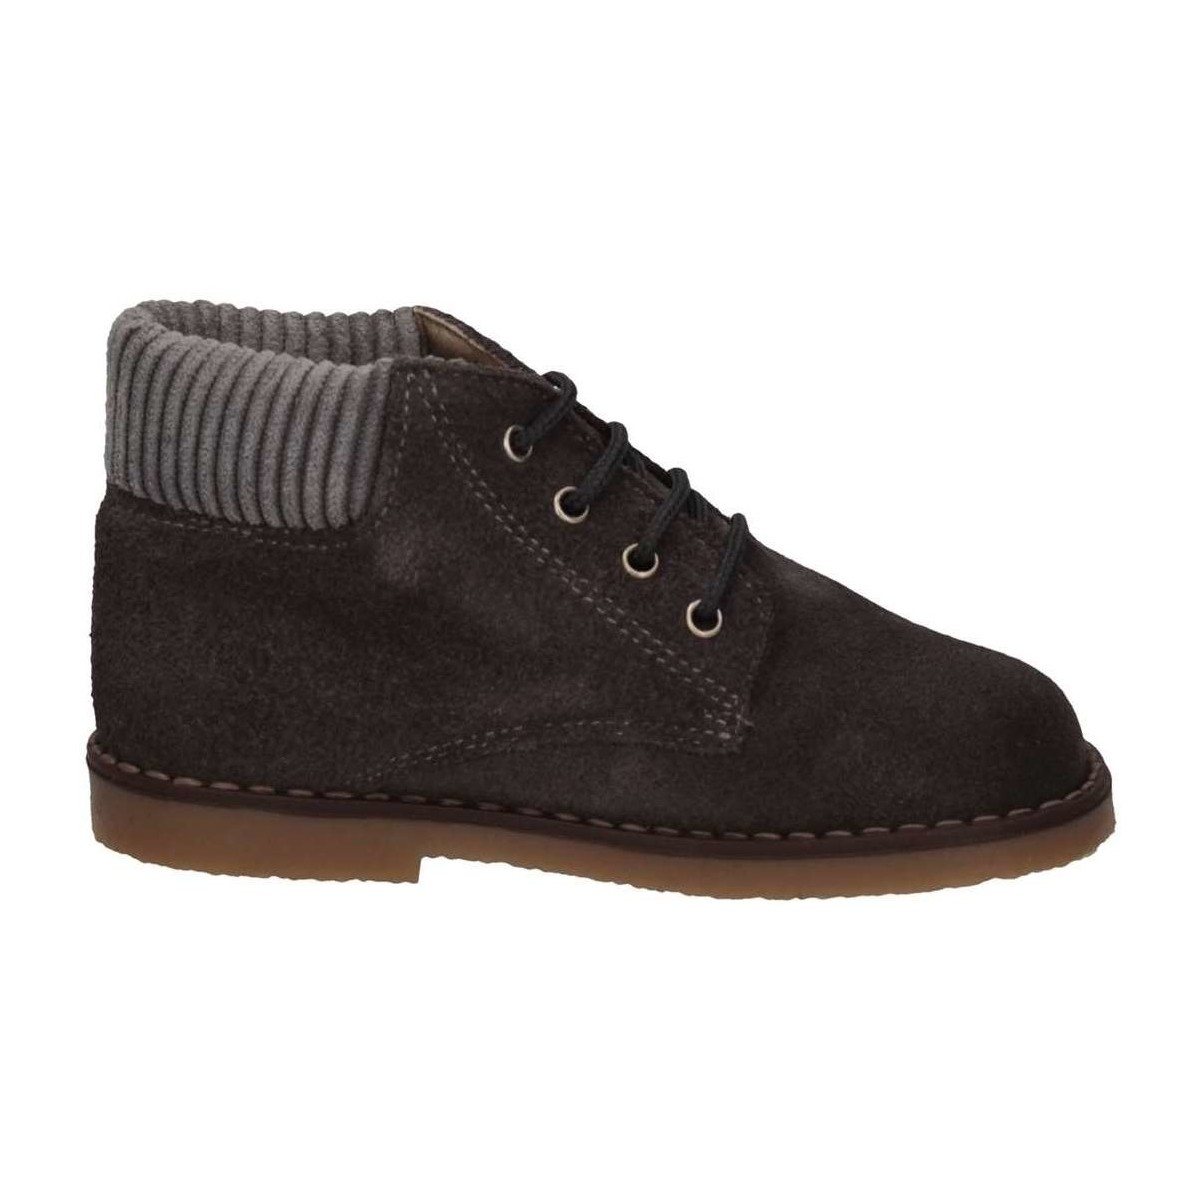 Schuhe Jungen Boots Cucada 8851V ACERO Ankle Kind grau Grau